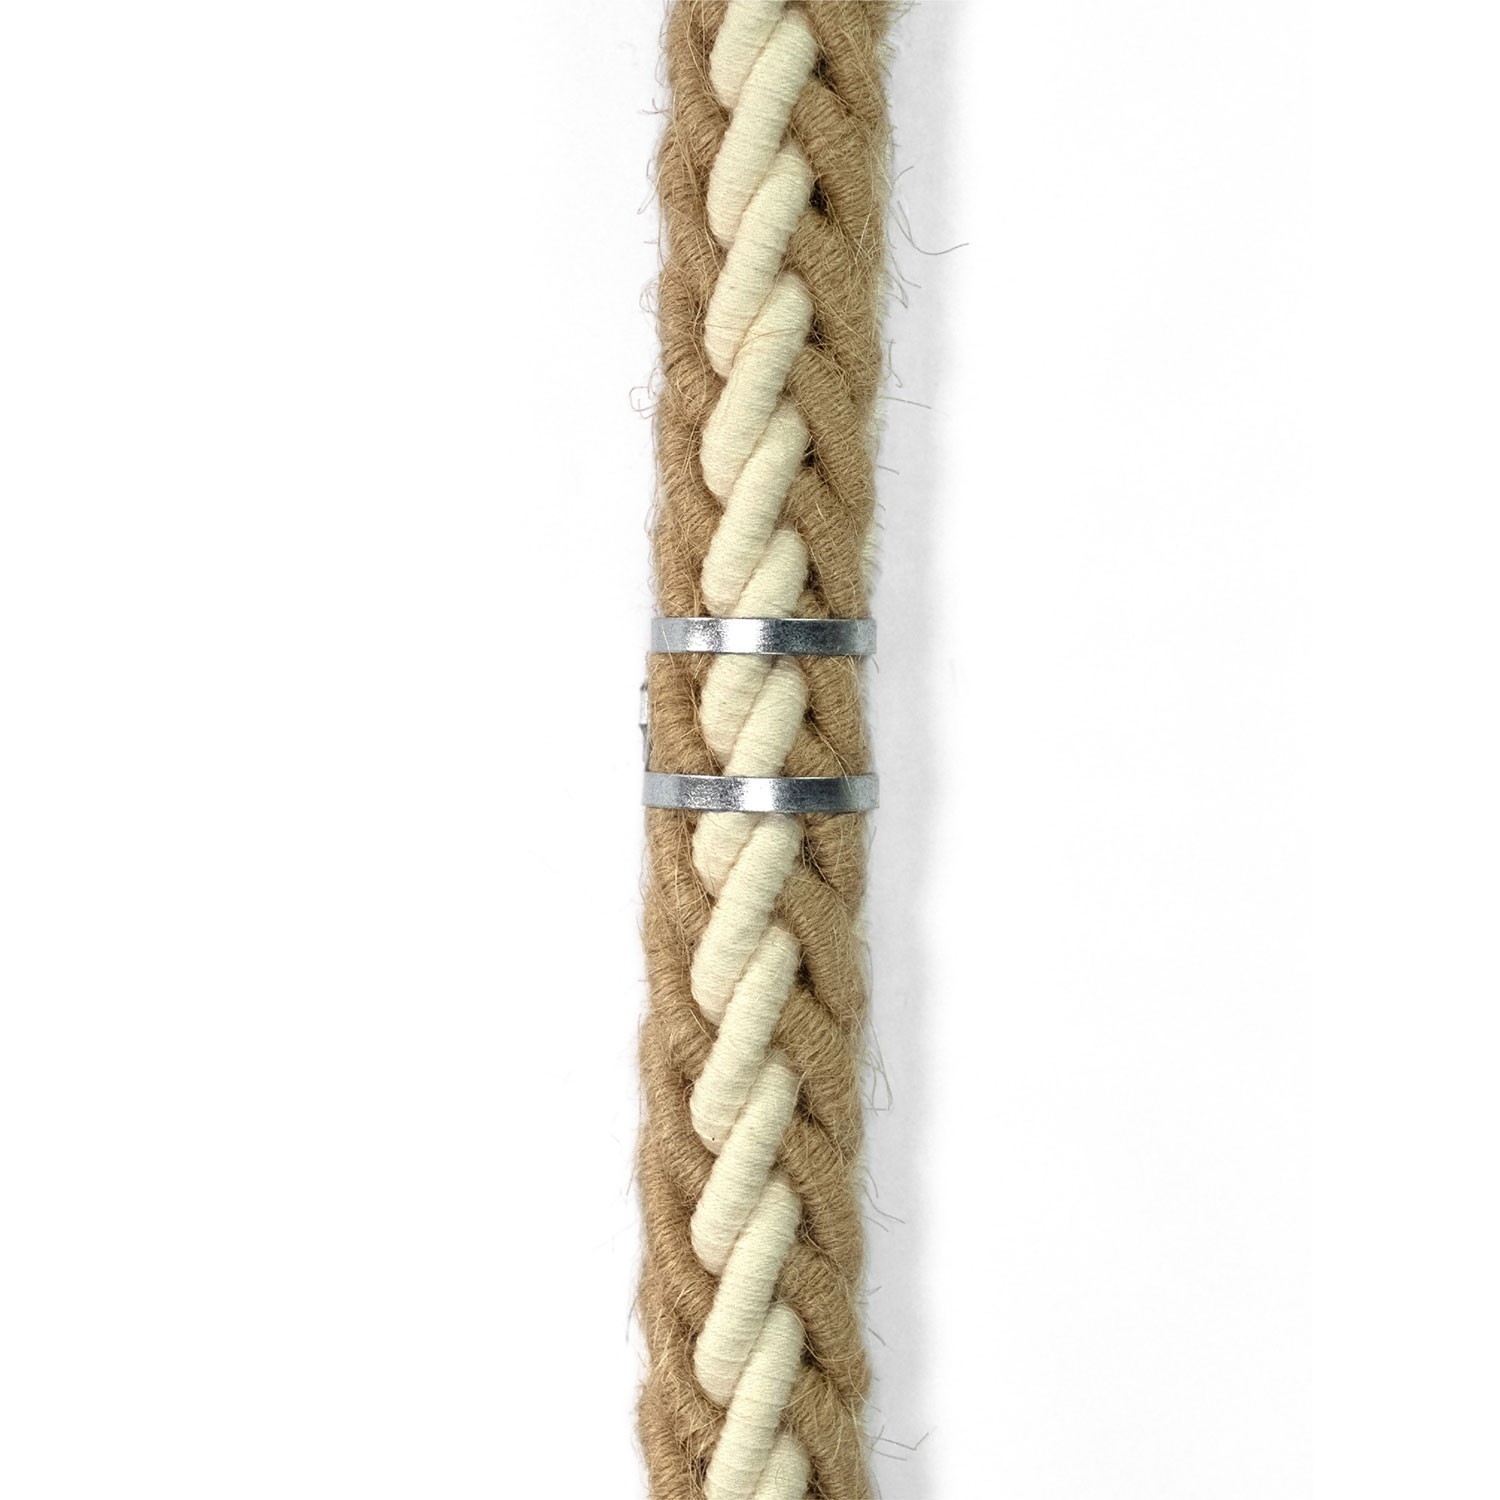 Kabelklämma i metall för repkablar med en diameter på 24 mm